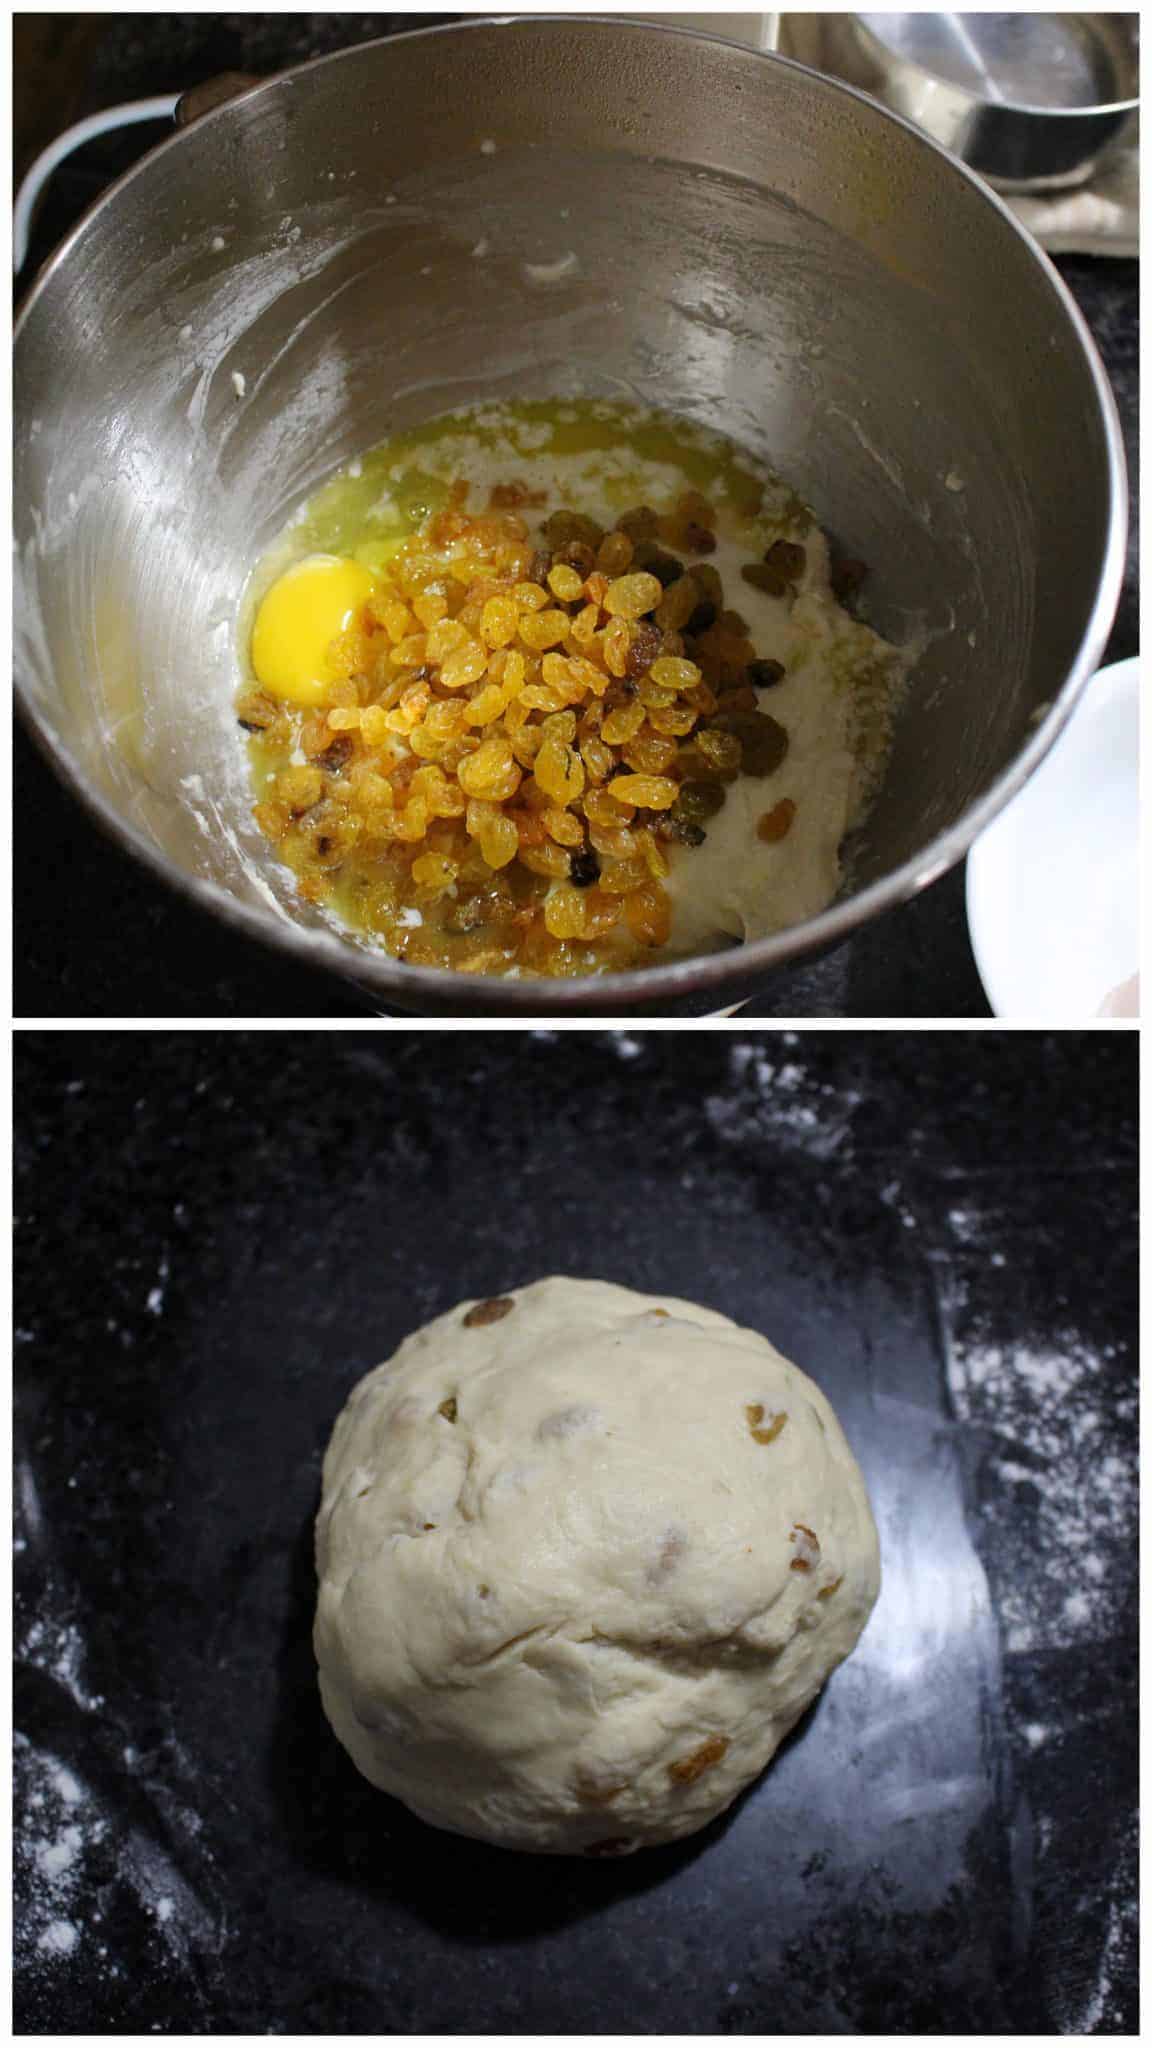 Adding eggs and raisin to the bread dough